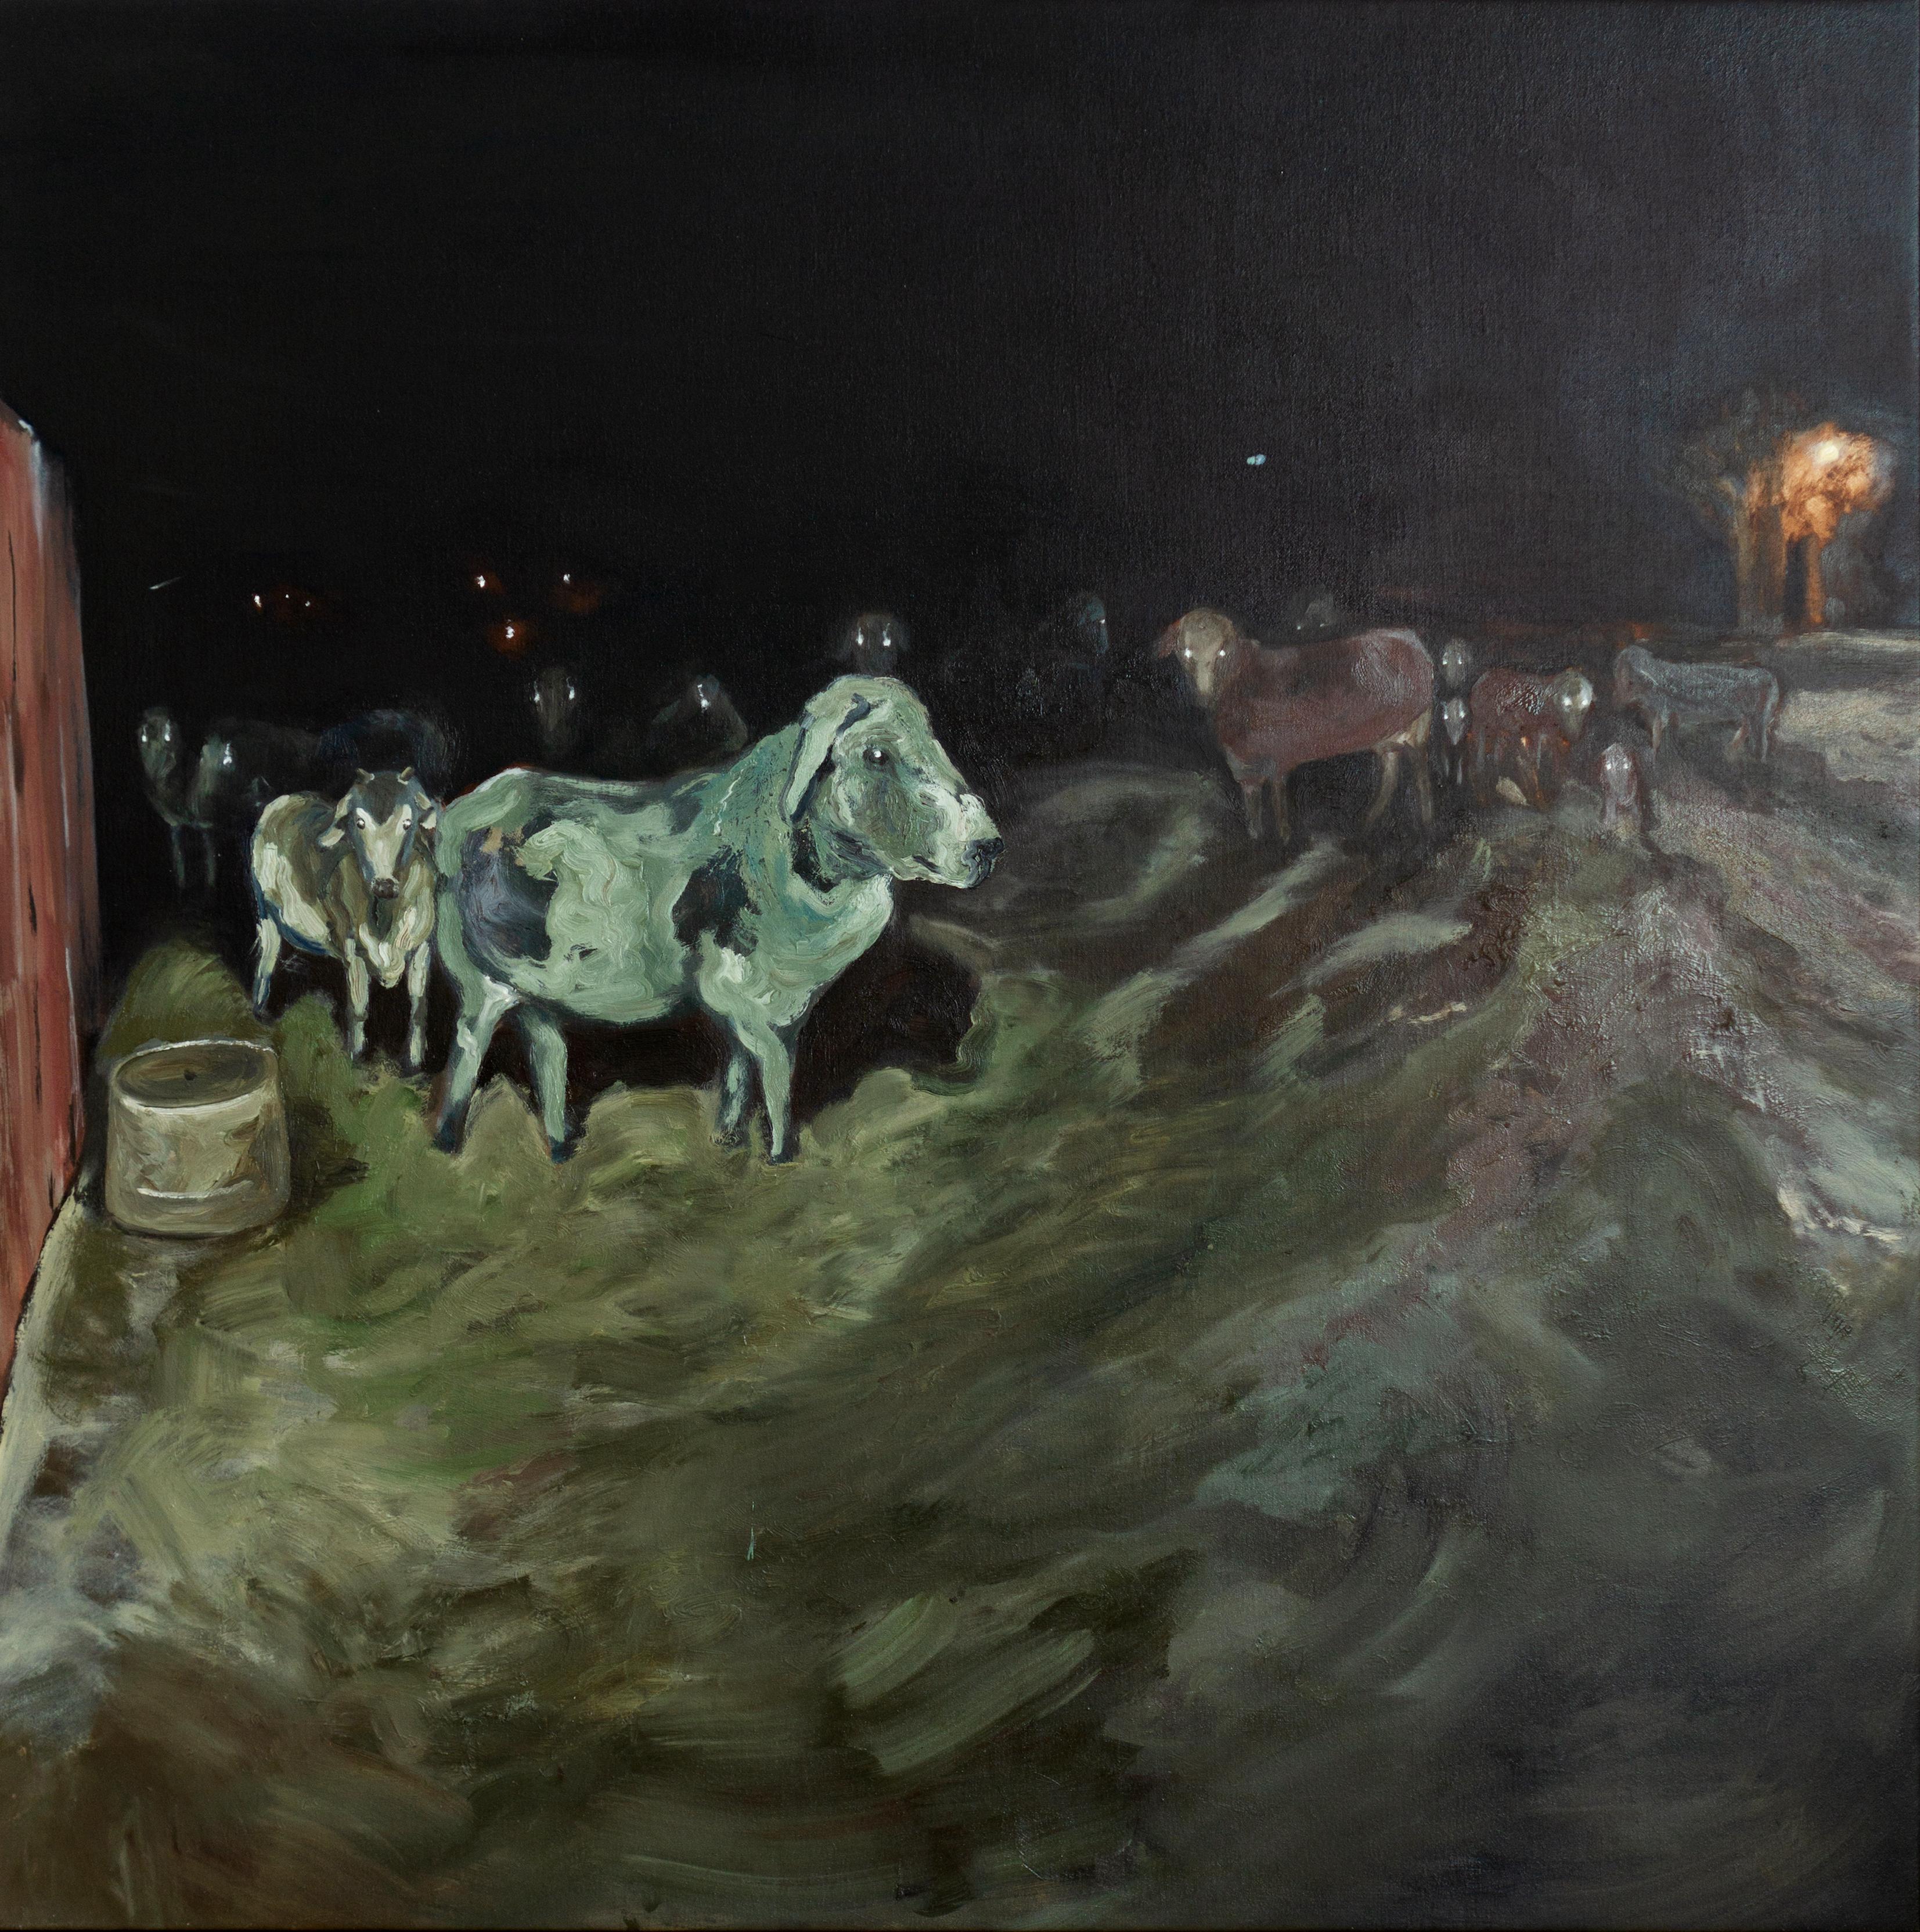 Kazakh Zeitgenössische Kunst von Baurjan Aralov – Kühe, die Sie beobachten